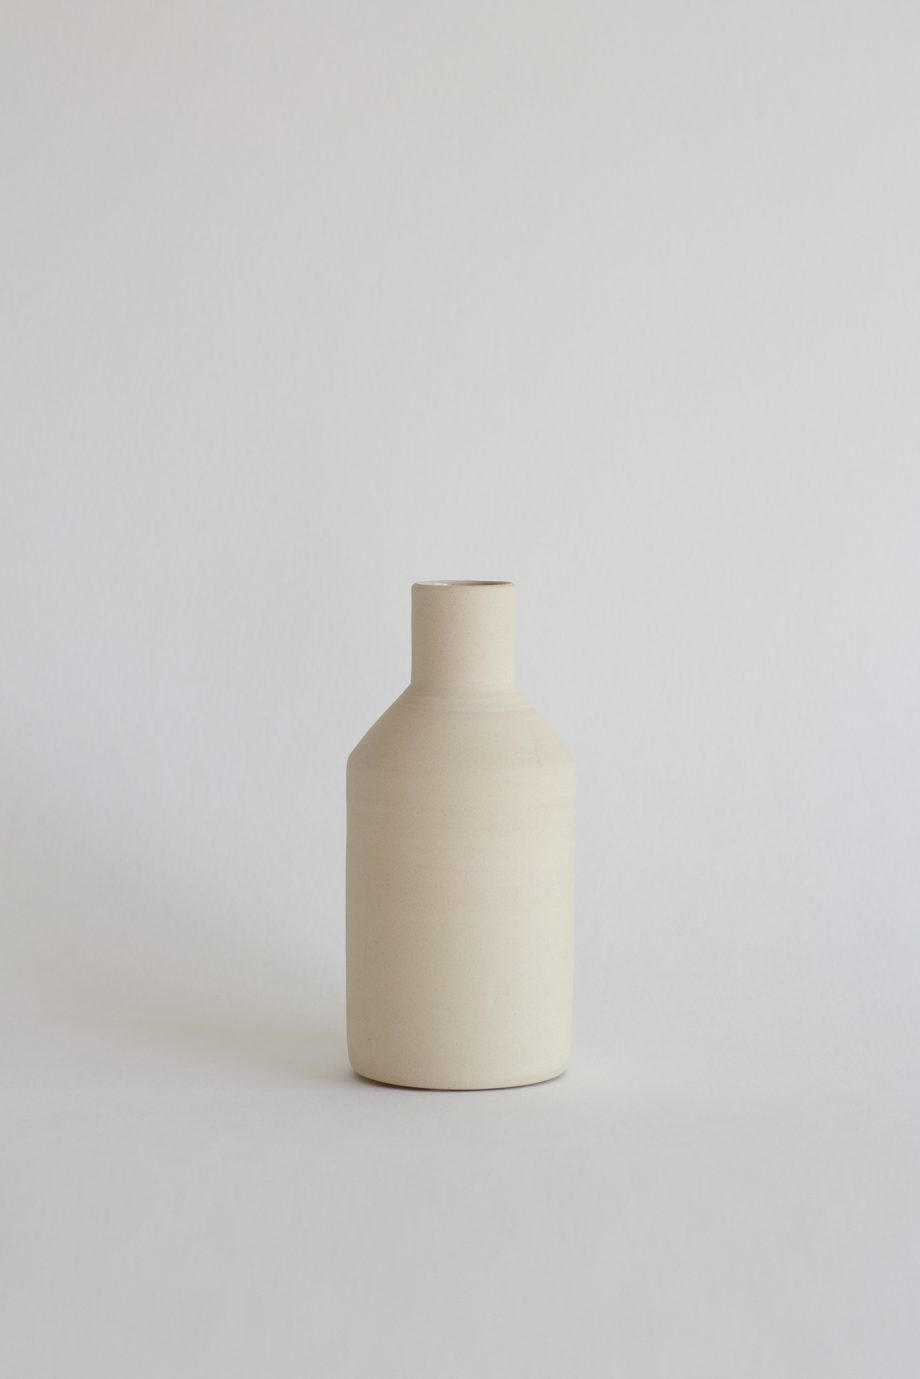 Kleine handgefertigte Vase aus natürlichem Steingut von der portugiesischen Marke für Wohndekoration o cactuu.